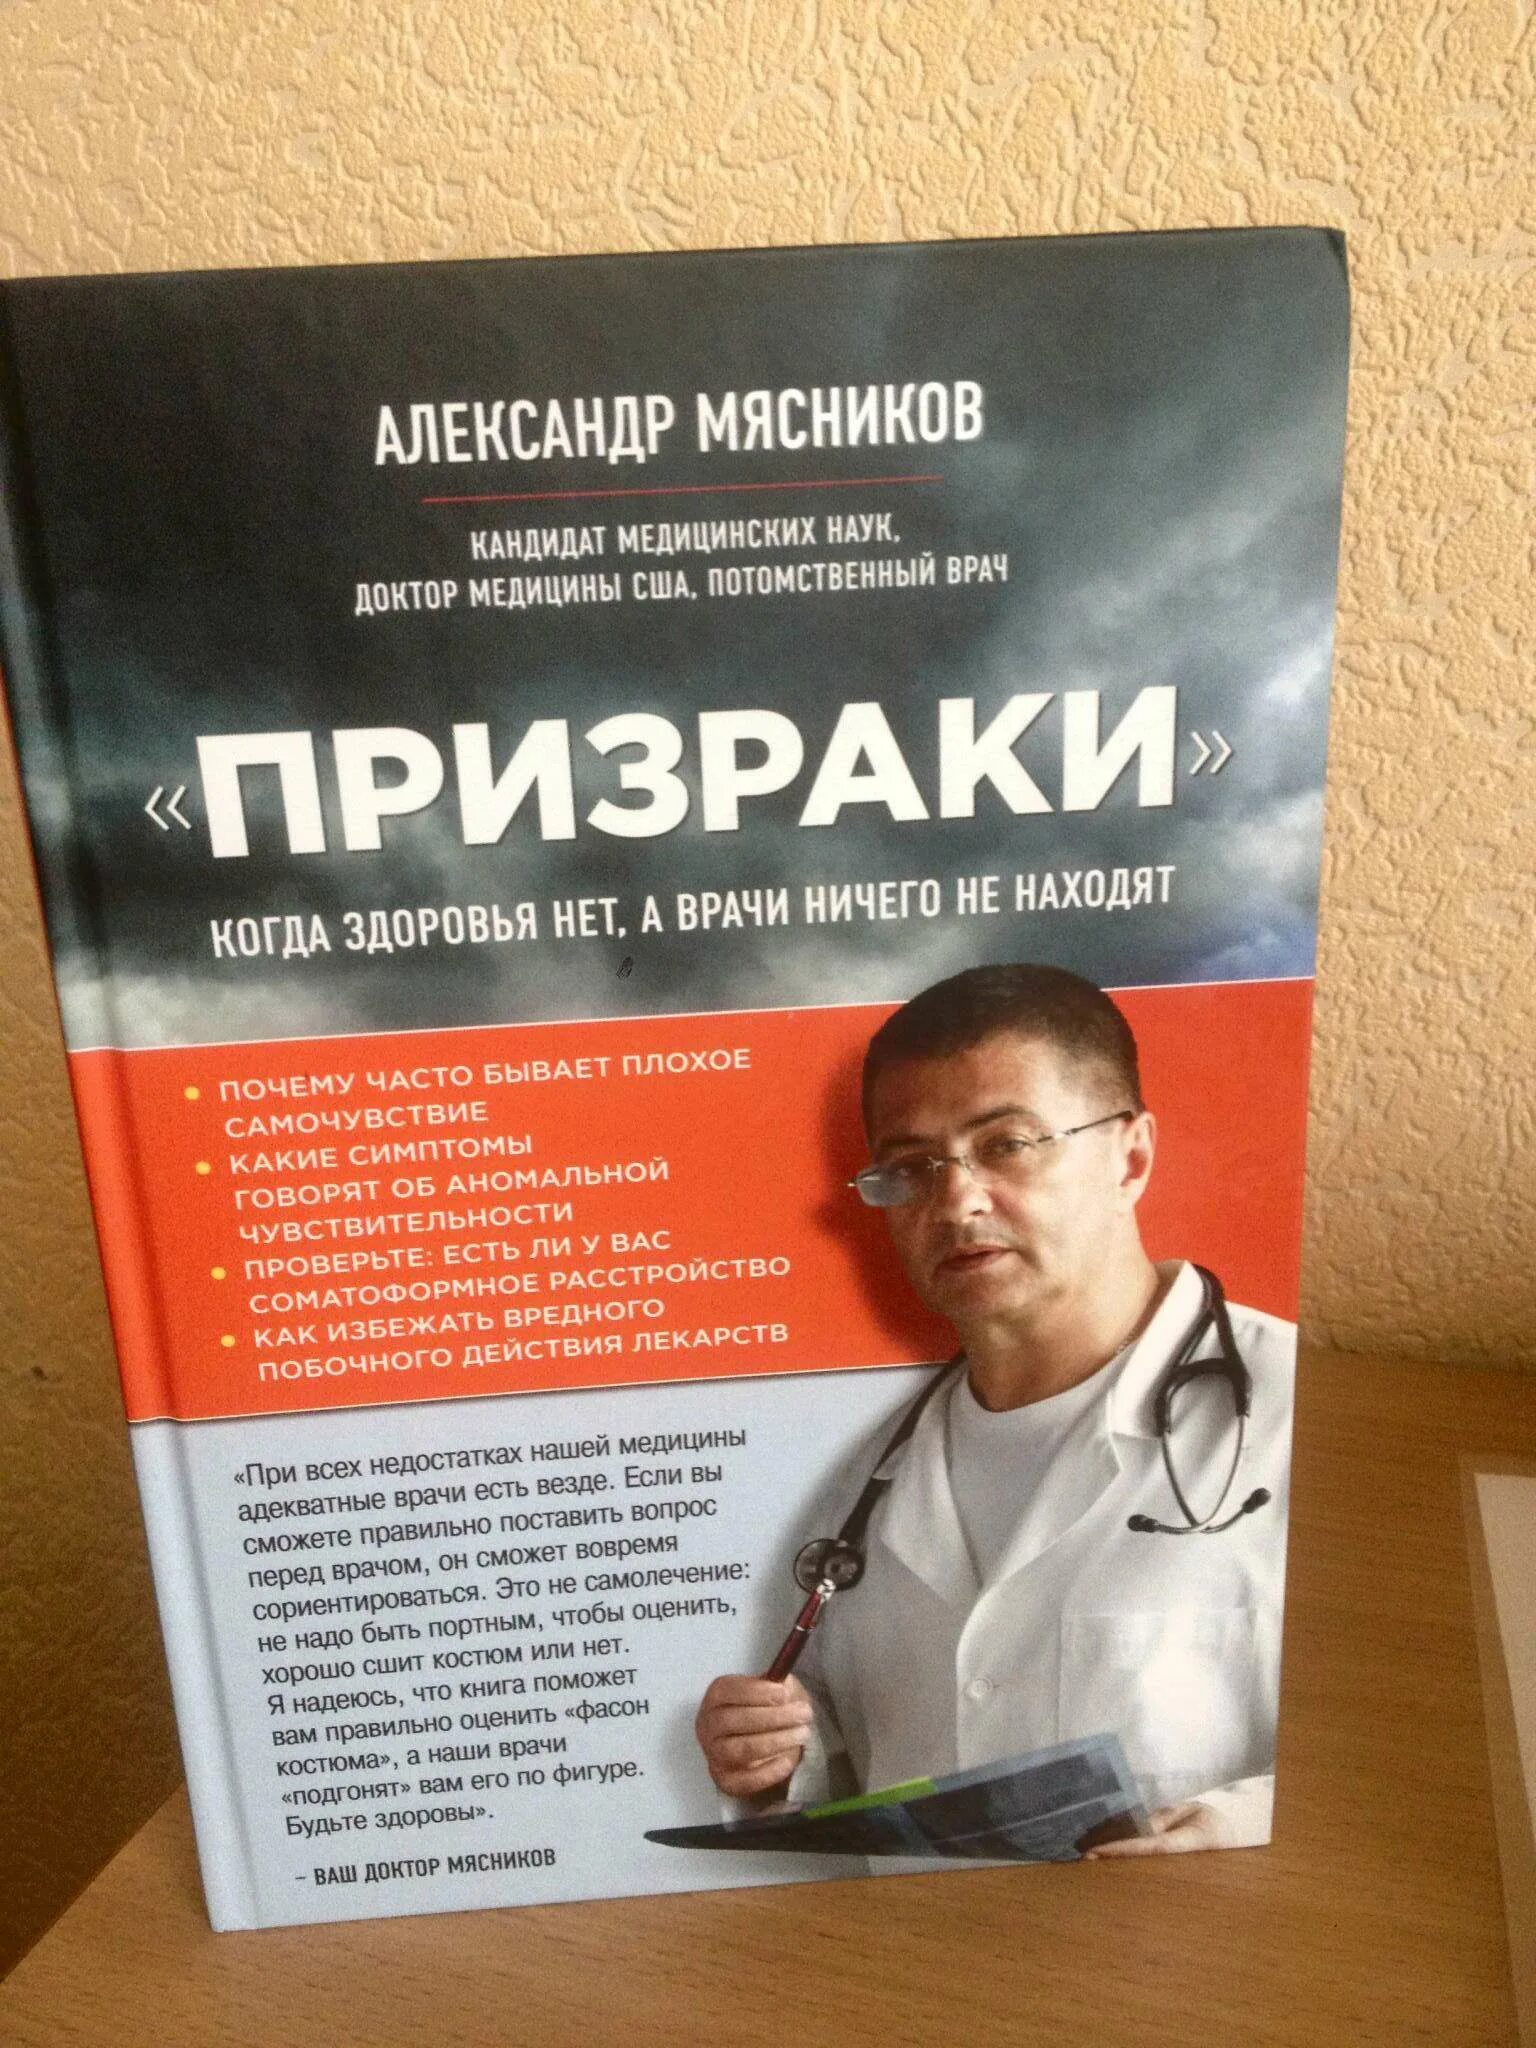 Врачи ничего не находят. Доктор Мясников книга. Название книг доктора Мясникова. Как называется книга доктора Мясникова.